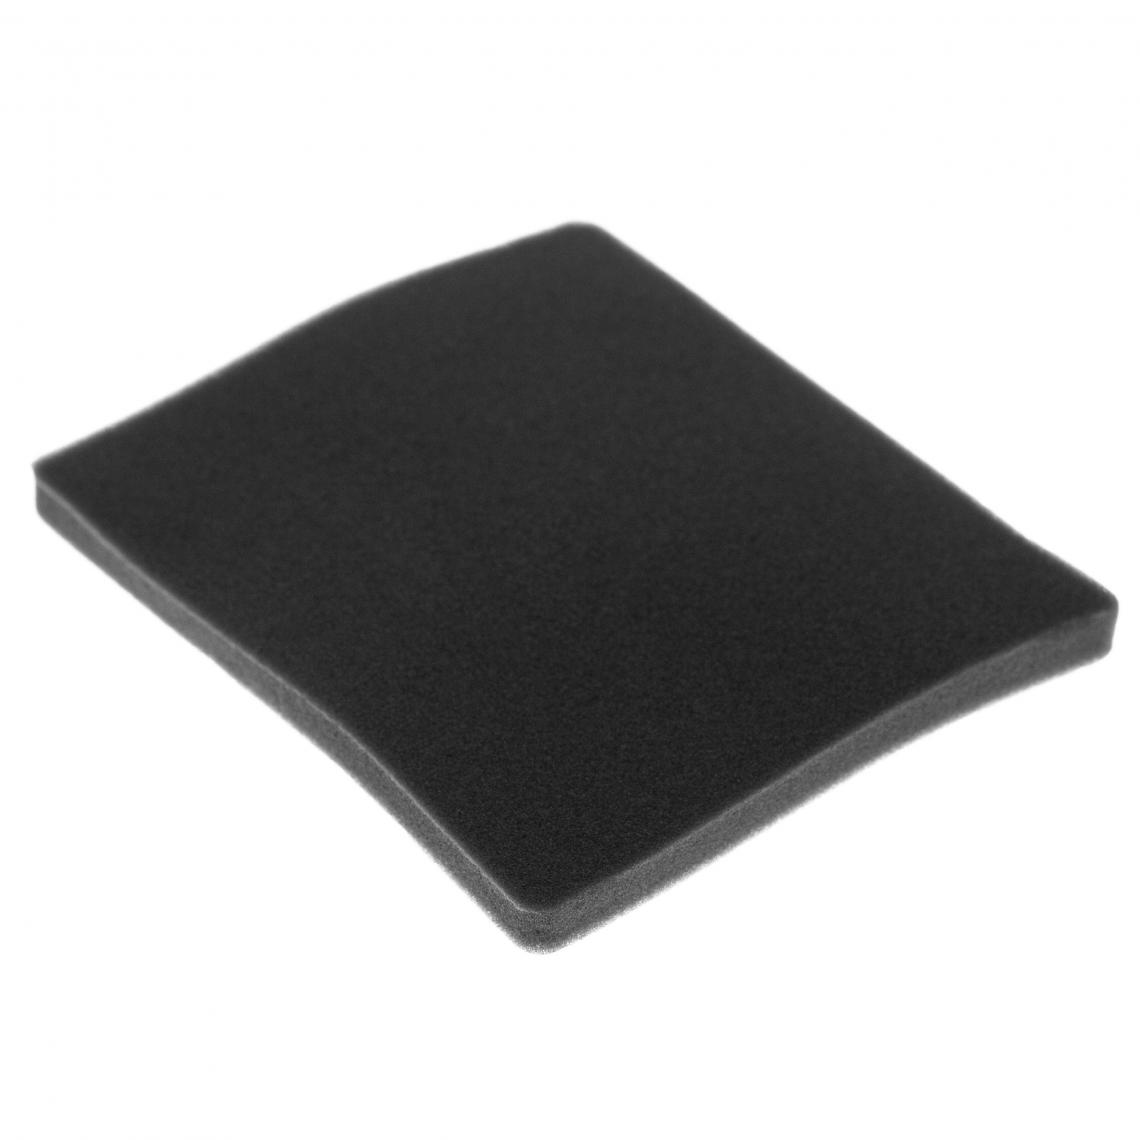 Vhbw - vhbw Filtre compatible avec Electrolux ZAM6109 (910286652) aspirateur - filtre de sortie d'air (filtre éponge), noir - Accessoire entretien des sols